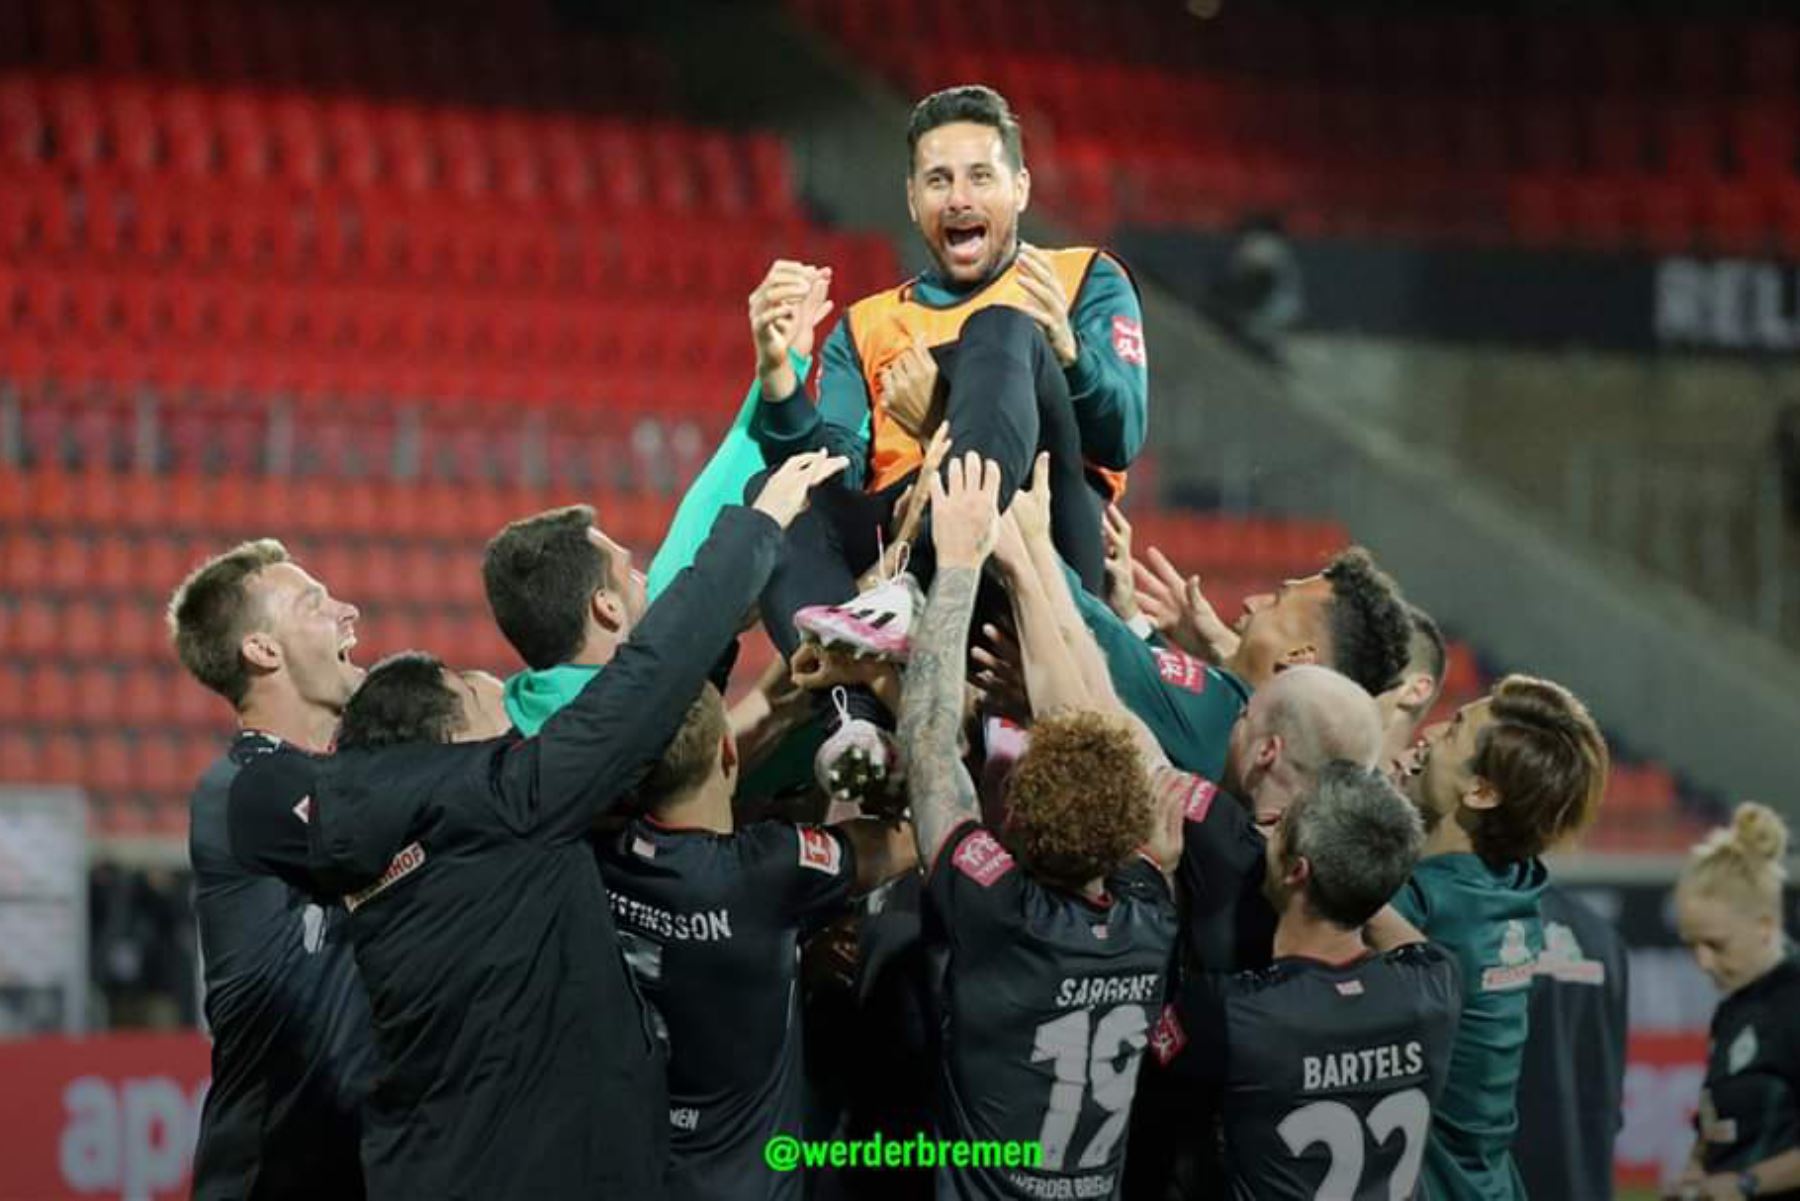 Claudio Pizarro fue lanzado por los aires tras despedirse del fútbol profesional
Foto: Twitter Werder Bremen